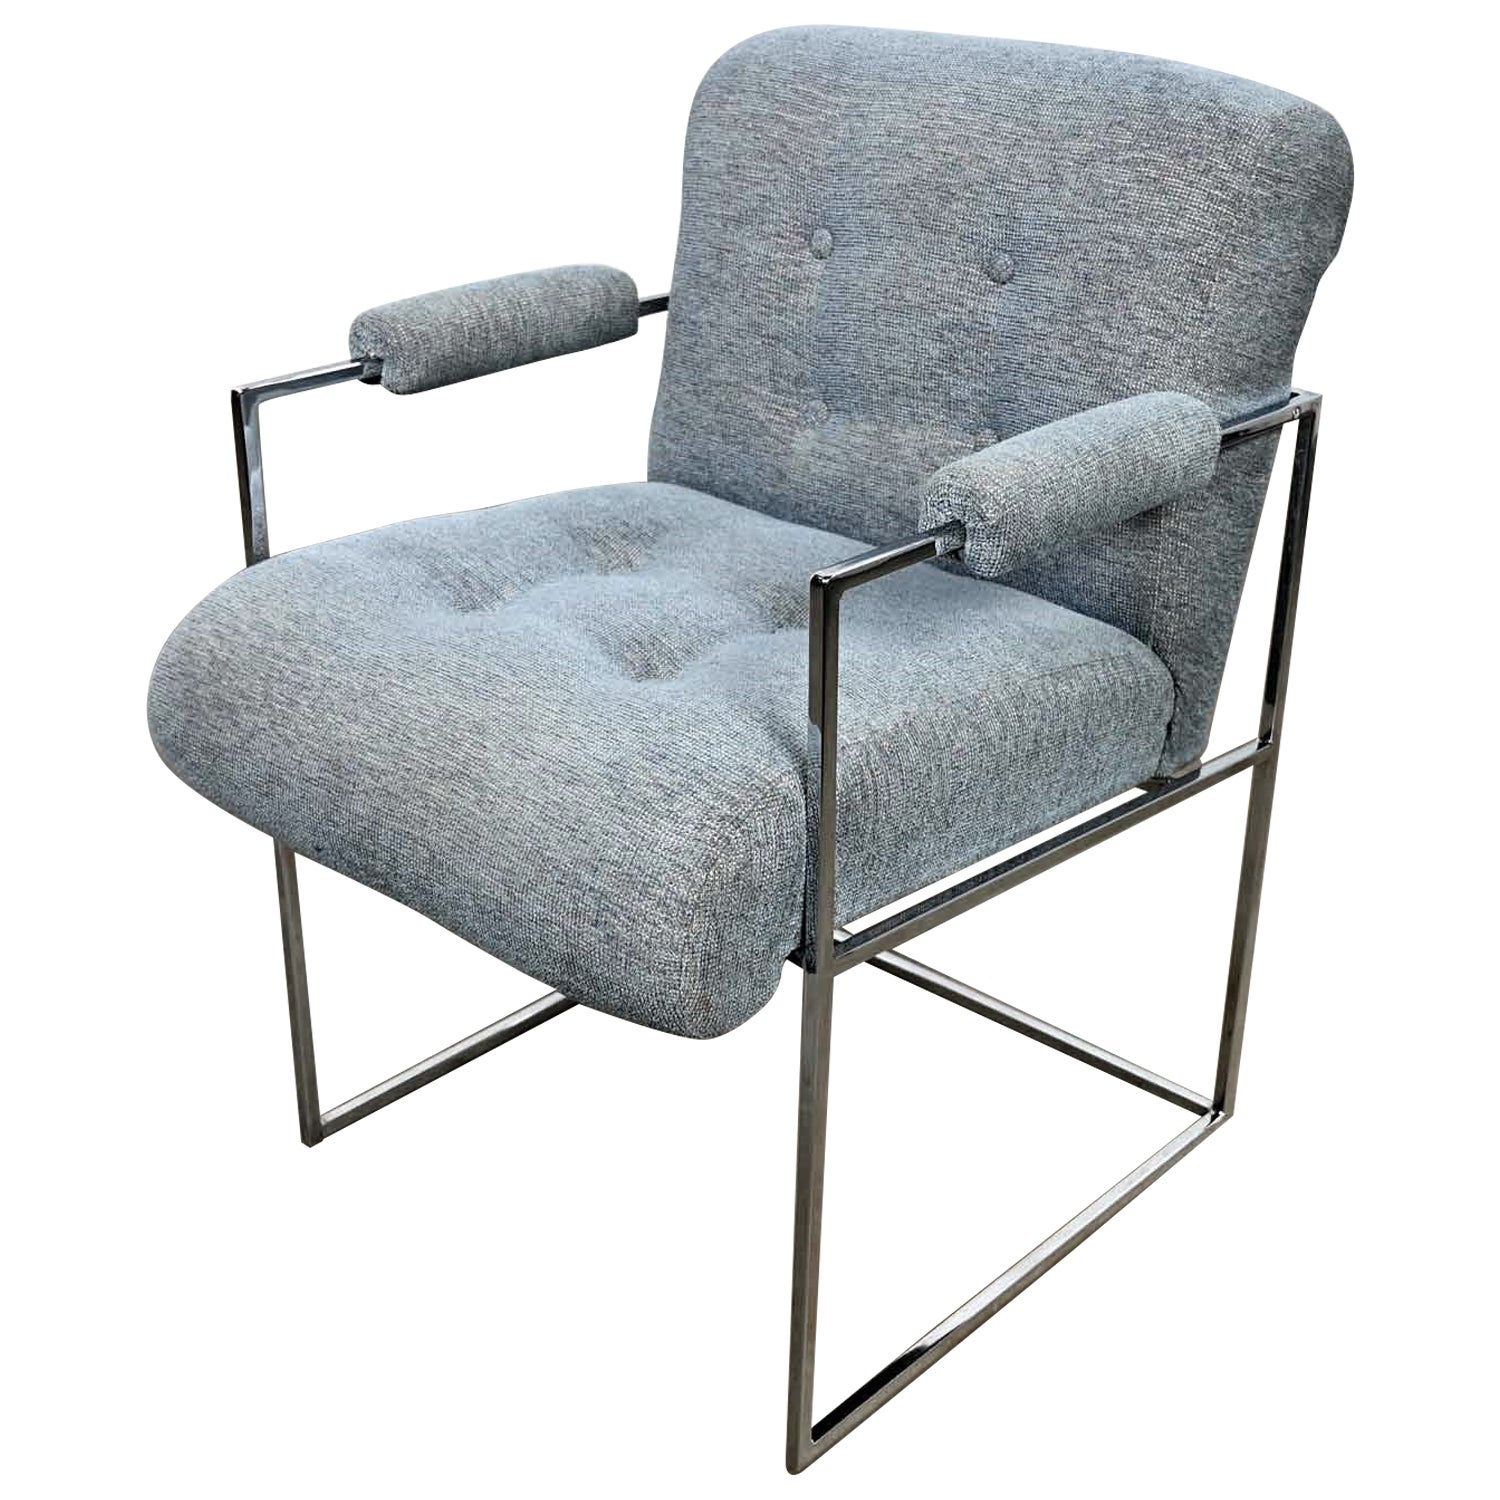 Moderner Sessel aus Chrom und blau-grauem Stoff in dünner Linie Milo Baughman Thayer Coggin